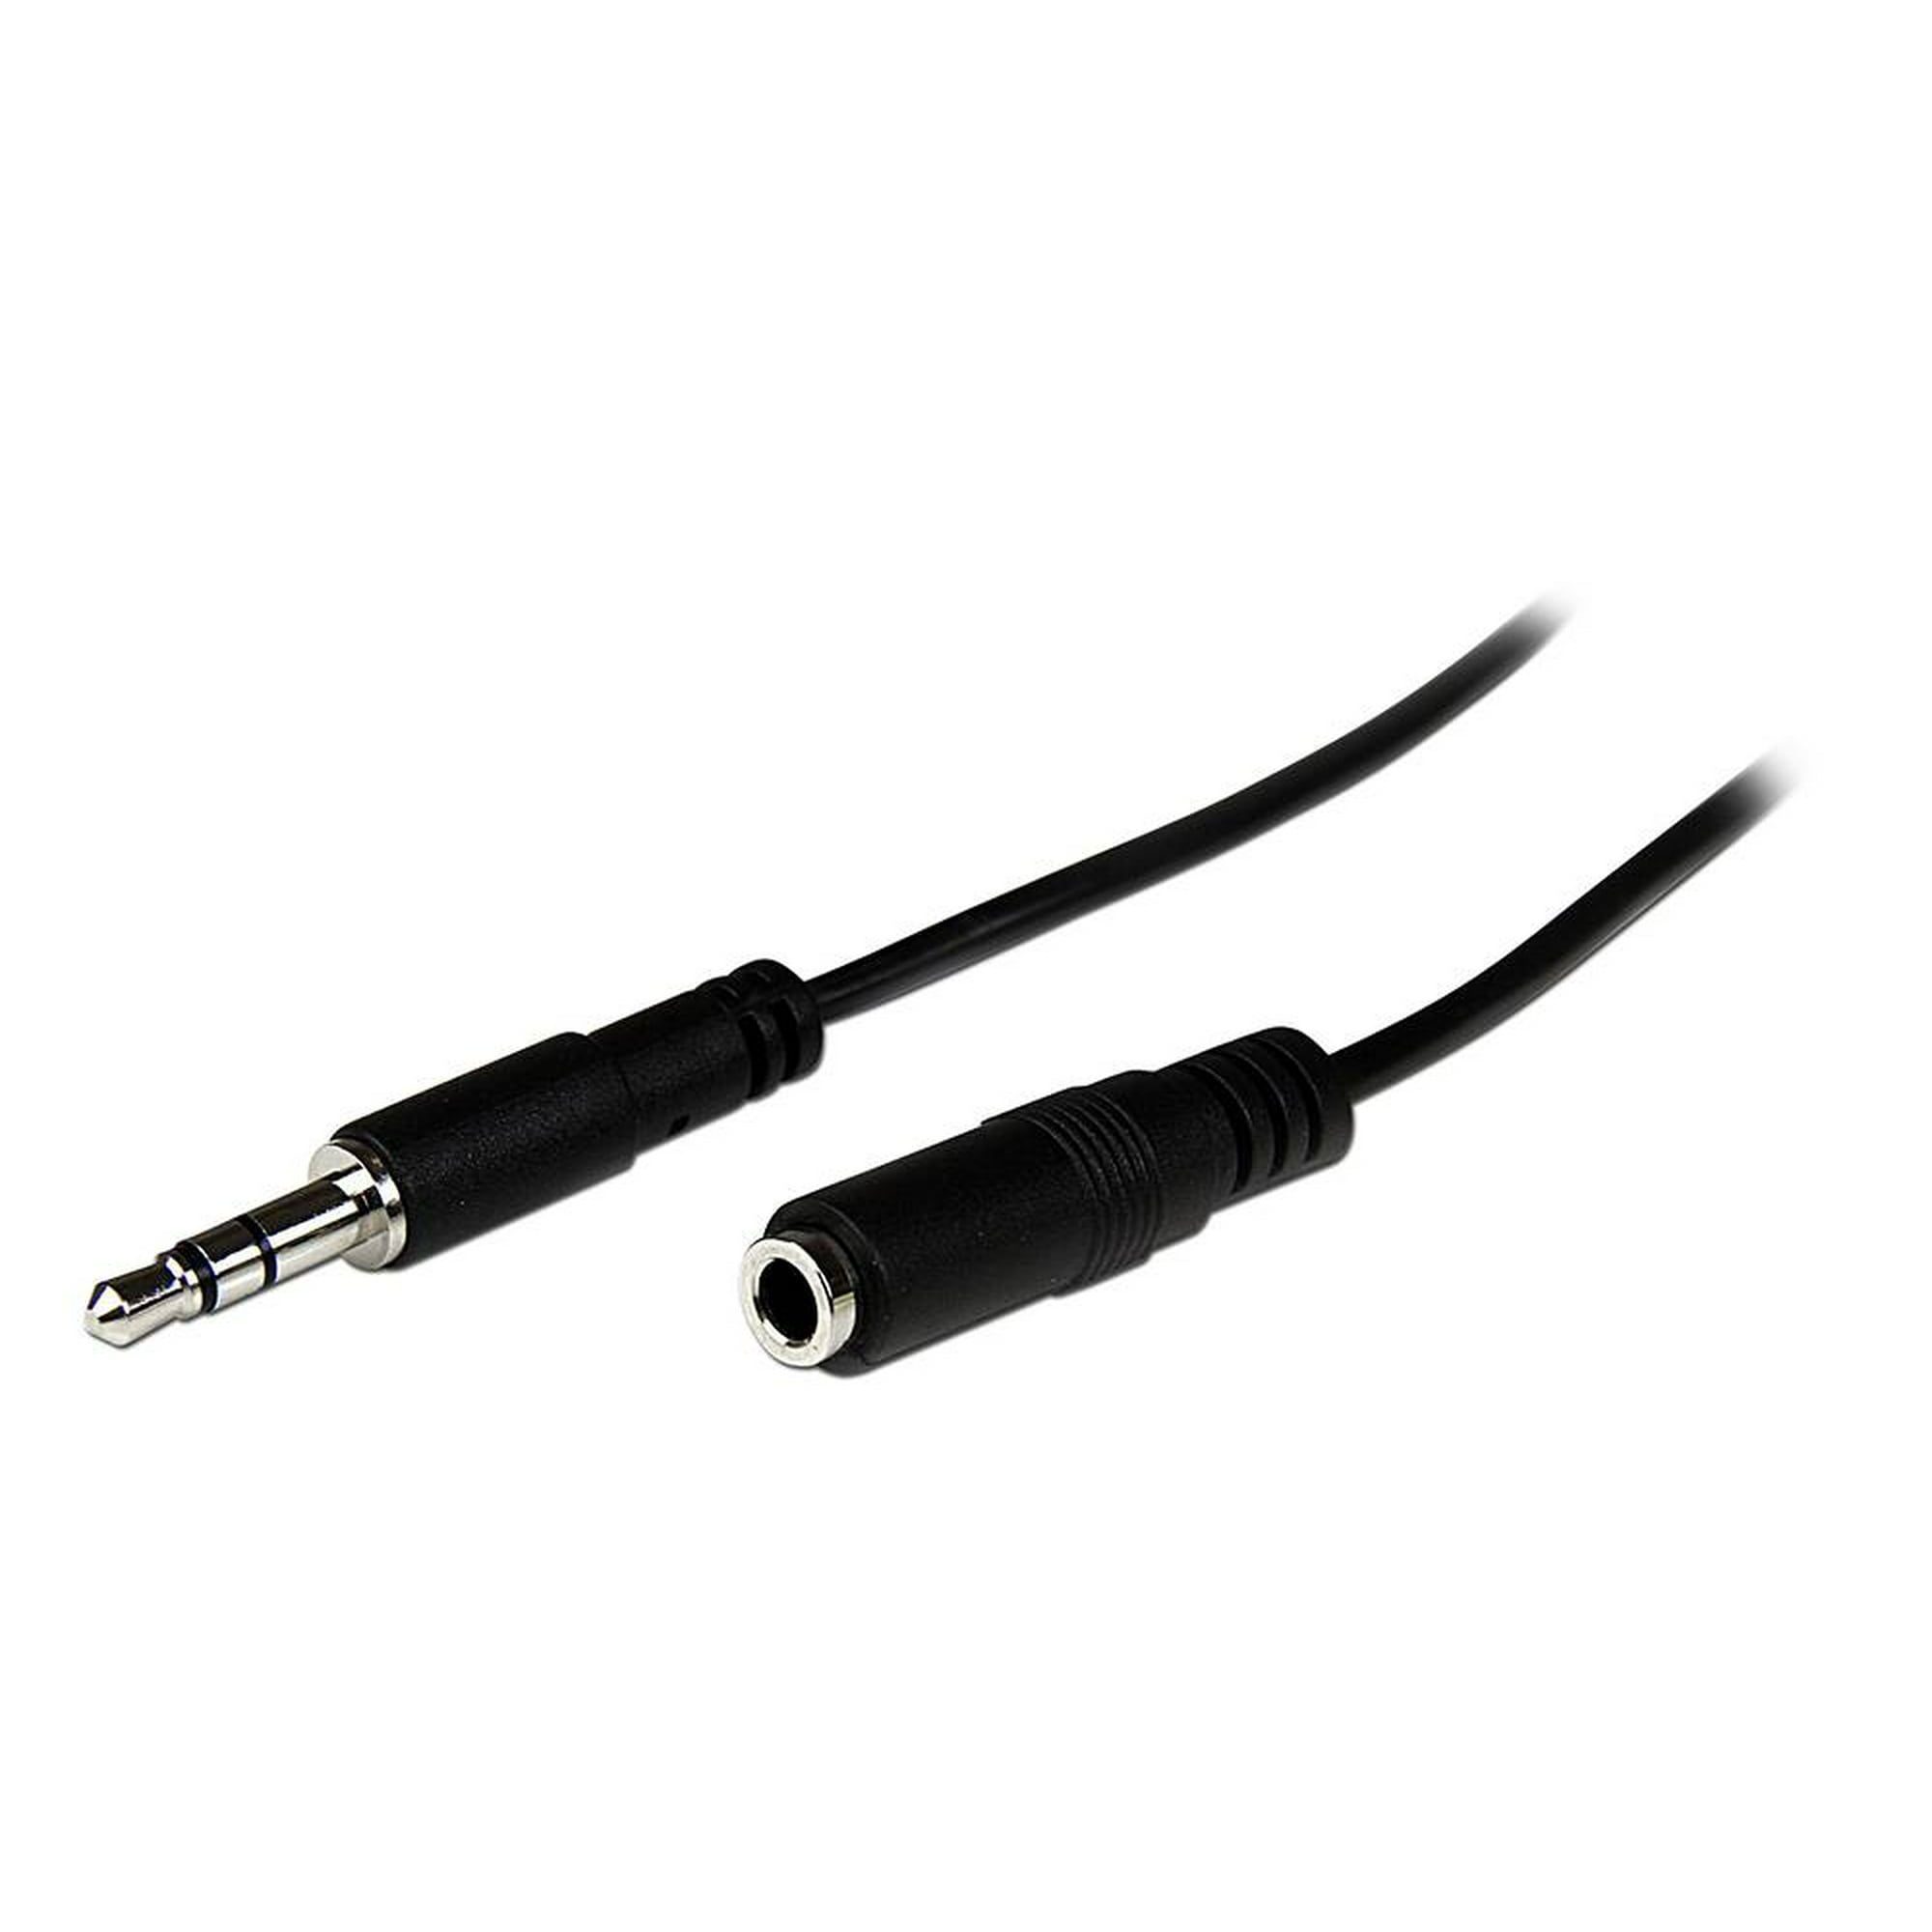 Basics - Cable alargador HDMI 2.0 de Alta Velocidad (Macho a Hembra,  1,8 m) + Cable alargador USB 2.0 Tipo A Macho a Tipo A Hembra (2 m)